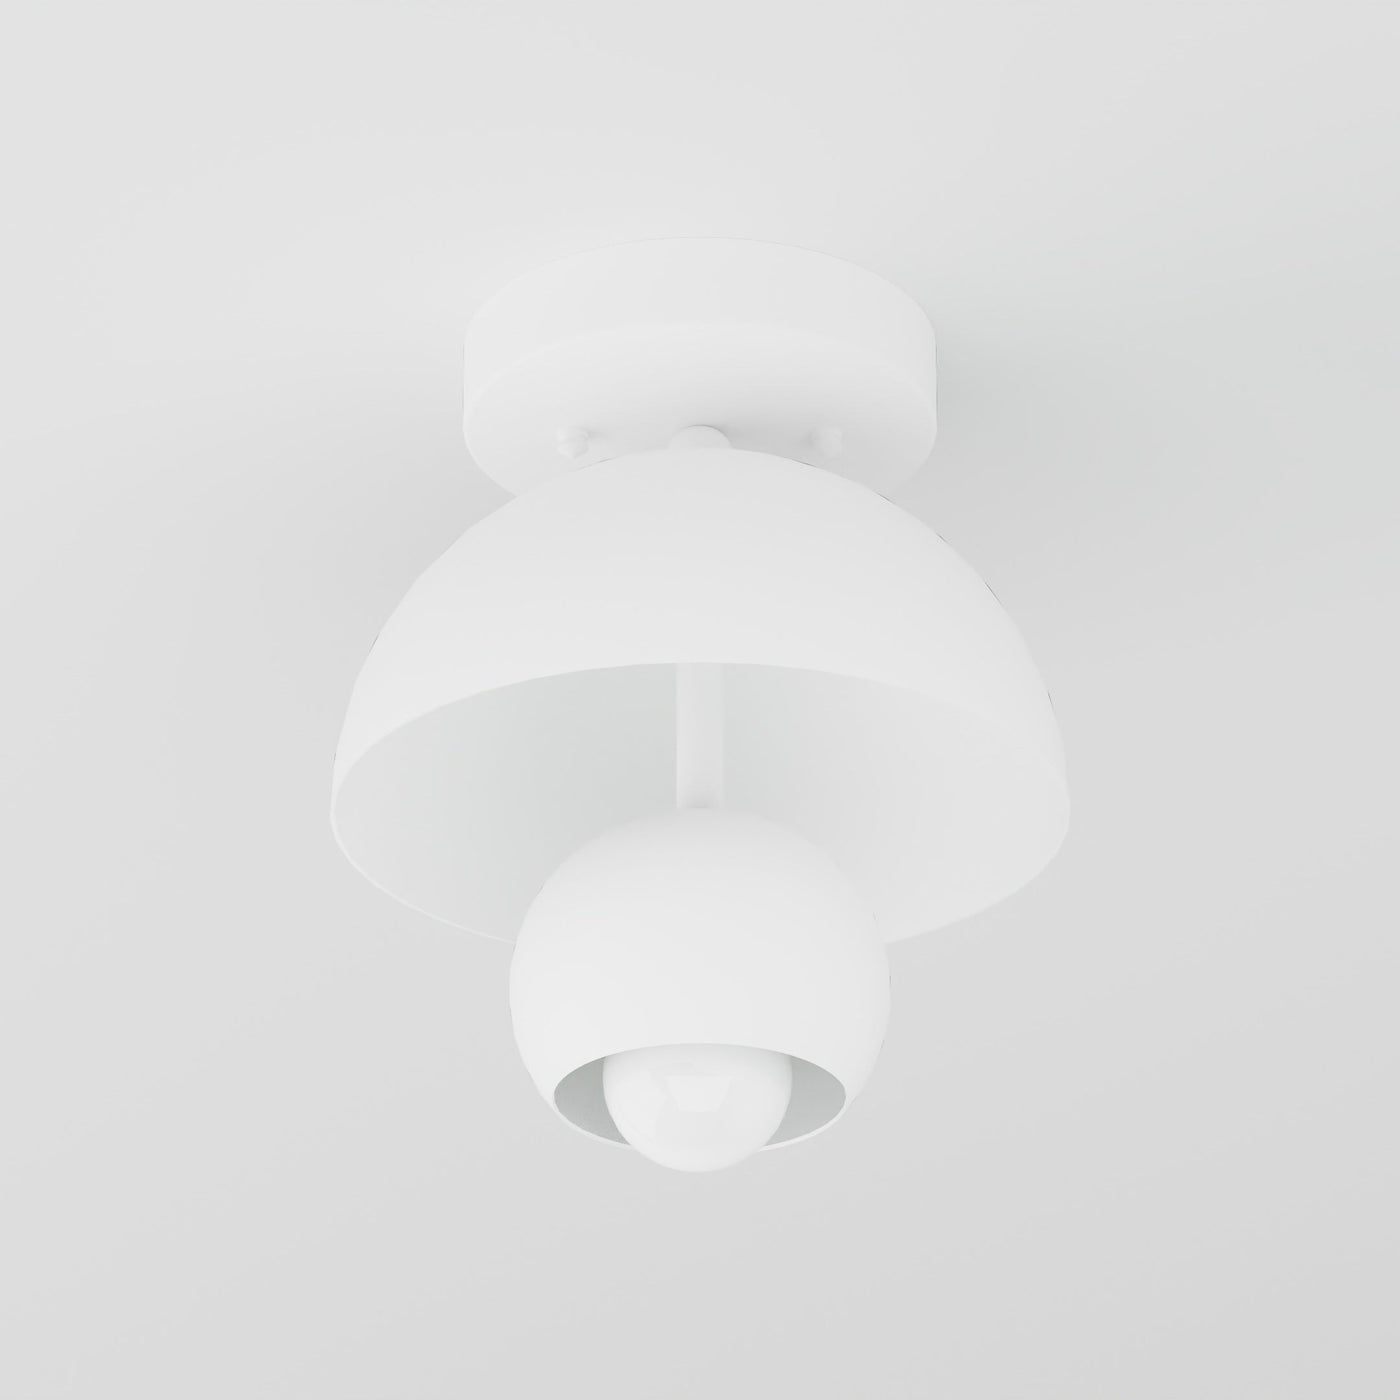 Decordona - Single Light Semi Flush Fixture